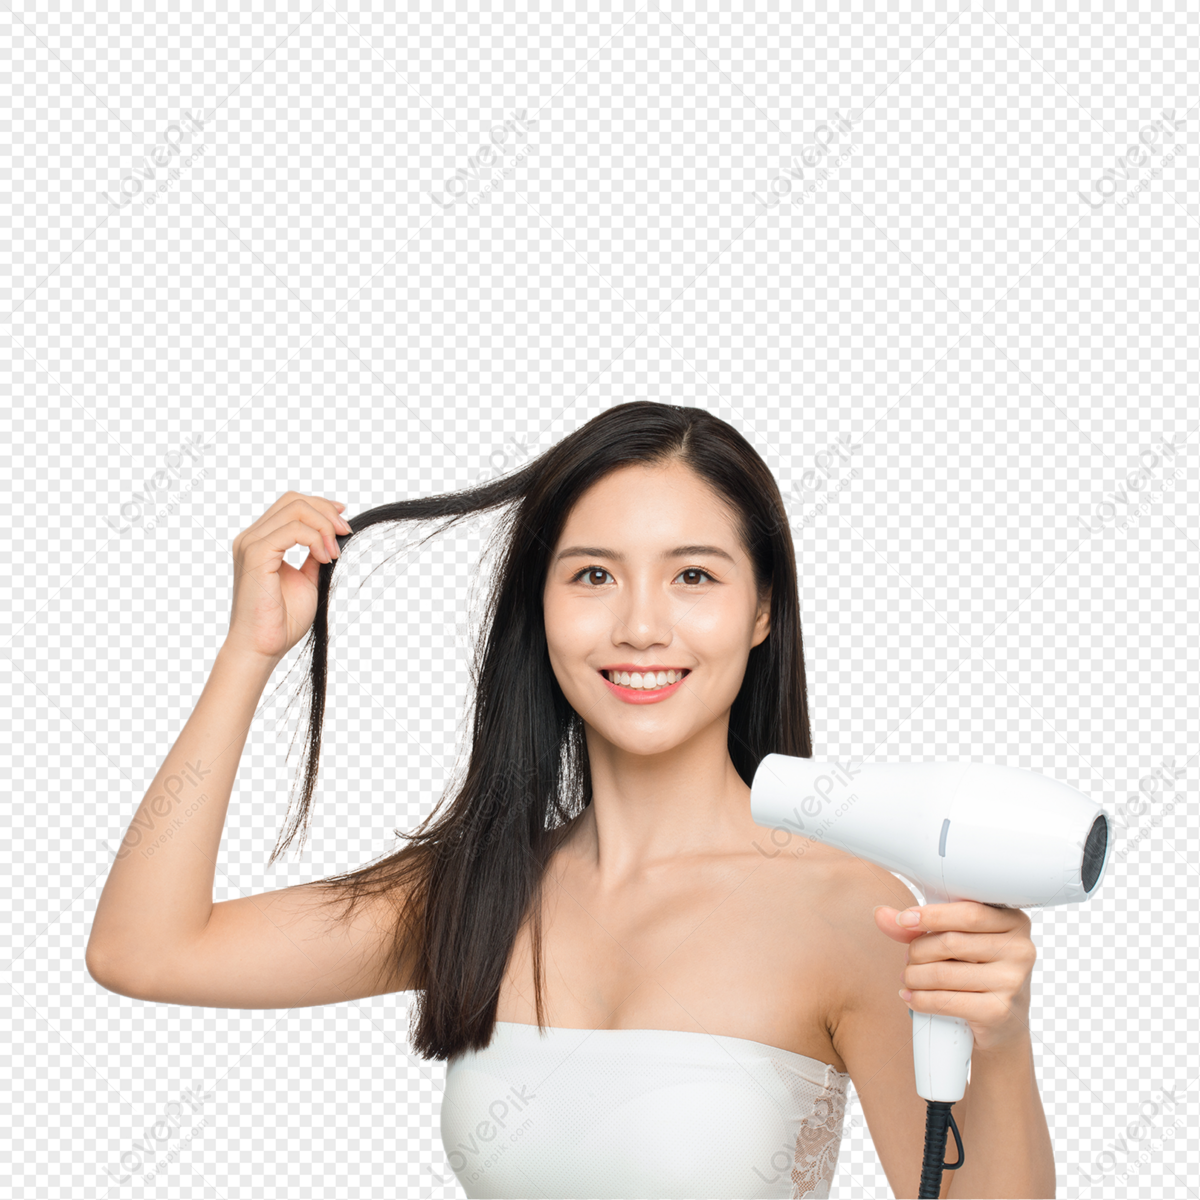 Mulheres no cabeleireiro com secador de cabelo fotos, imagens de